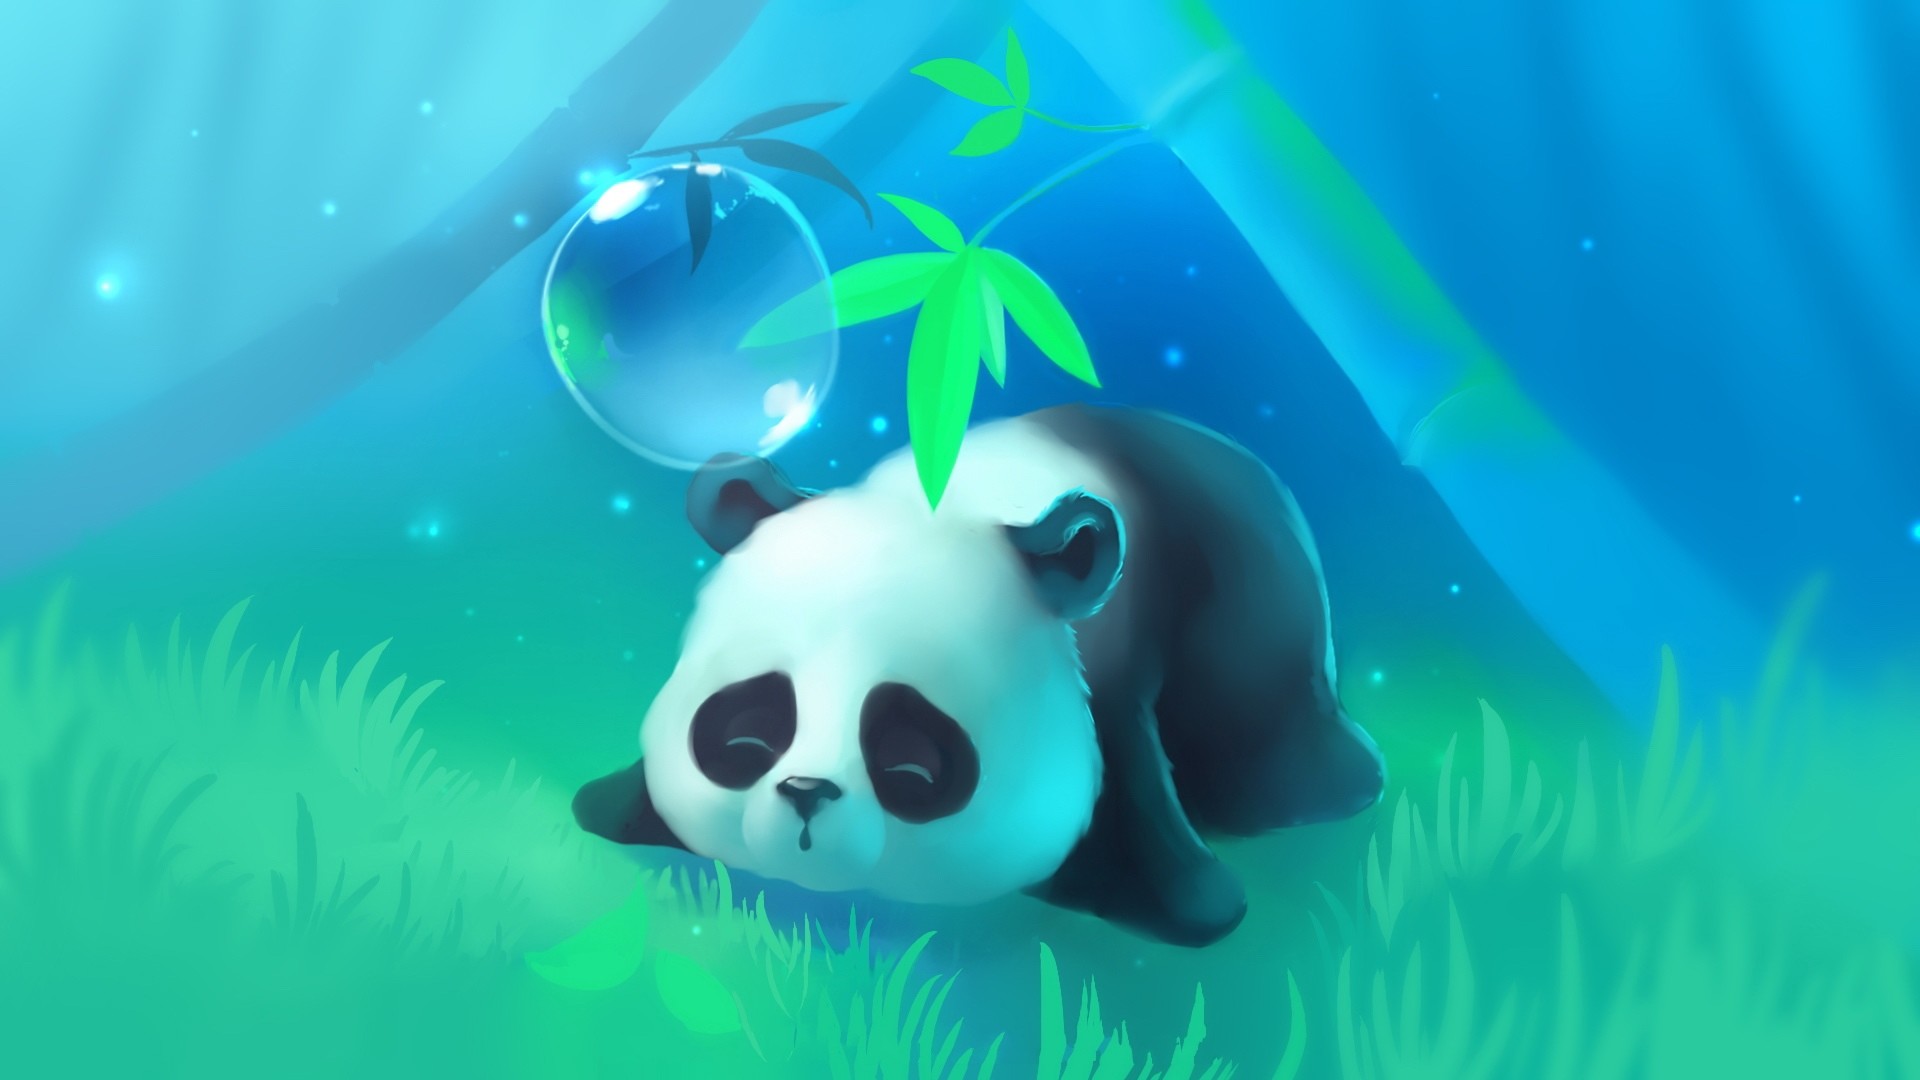 Chibi Panda Wallpaper Free Chibi Panda Background